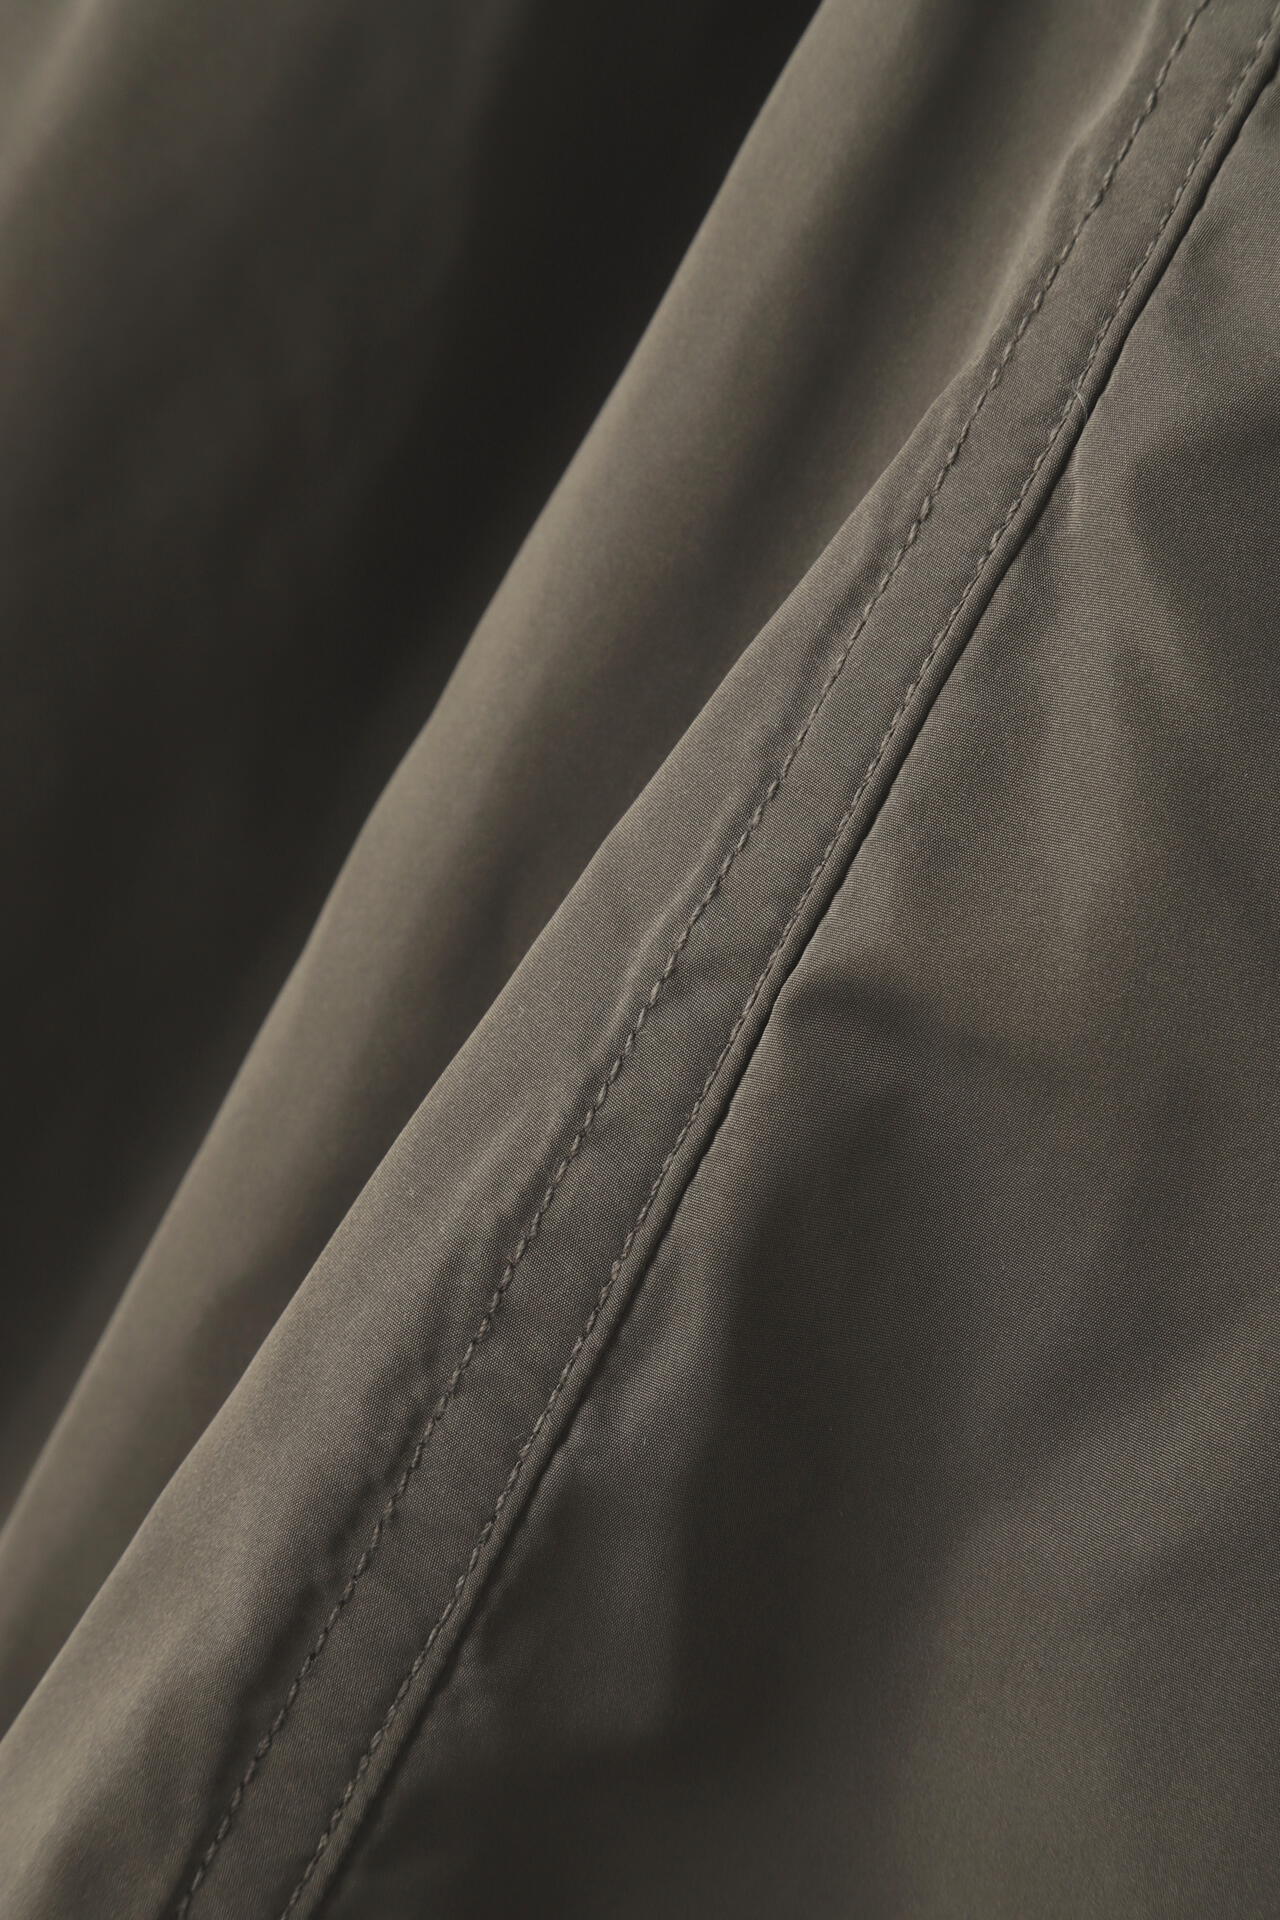 CHIGNON】中綿MA-1ボリュームスカート (ブラック・カーキ) | 【公式